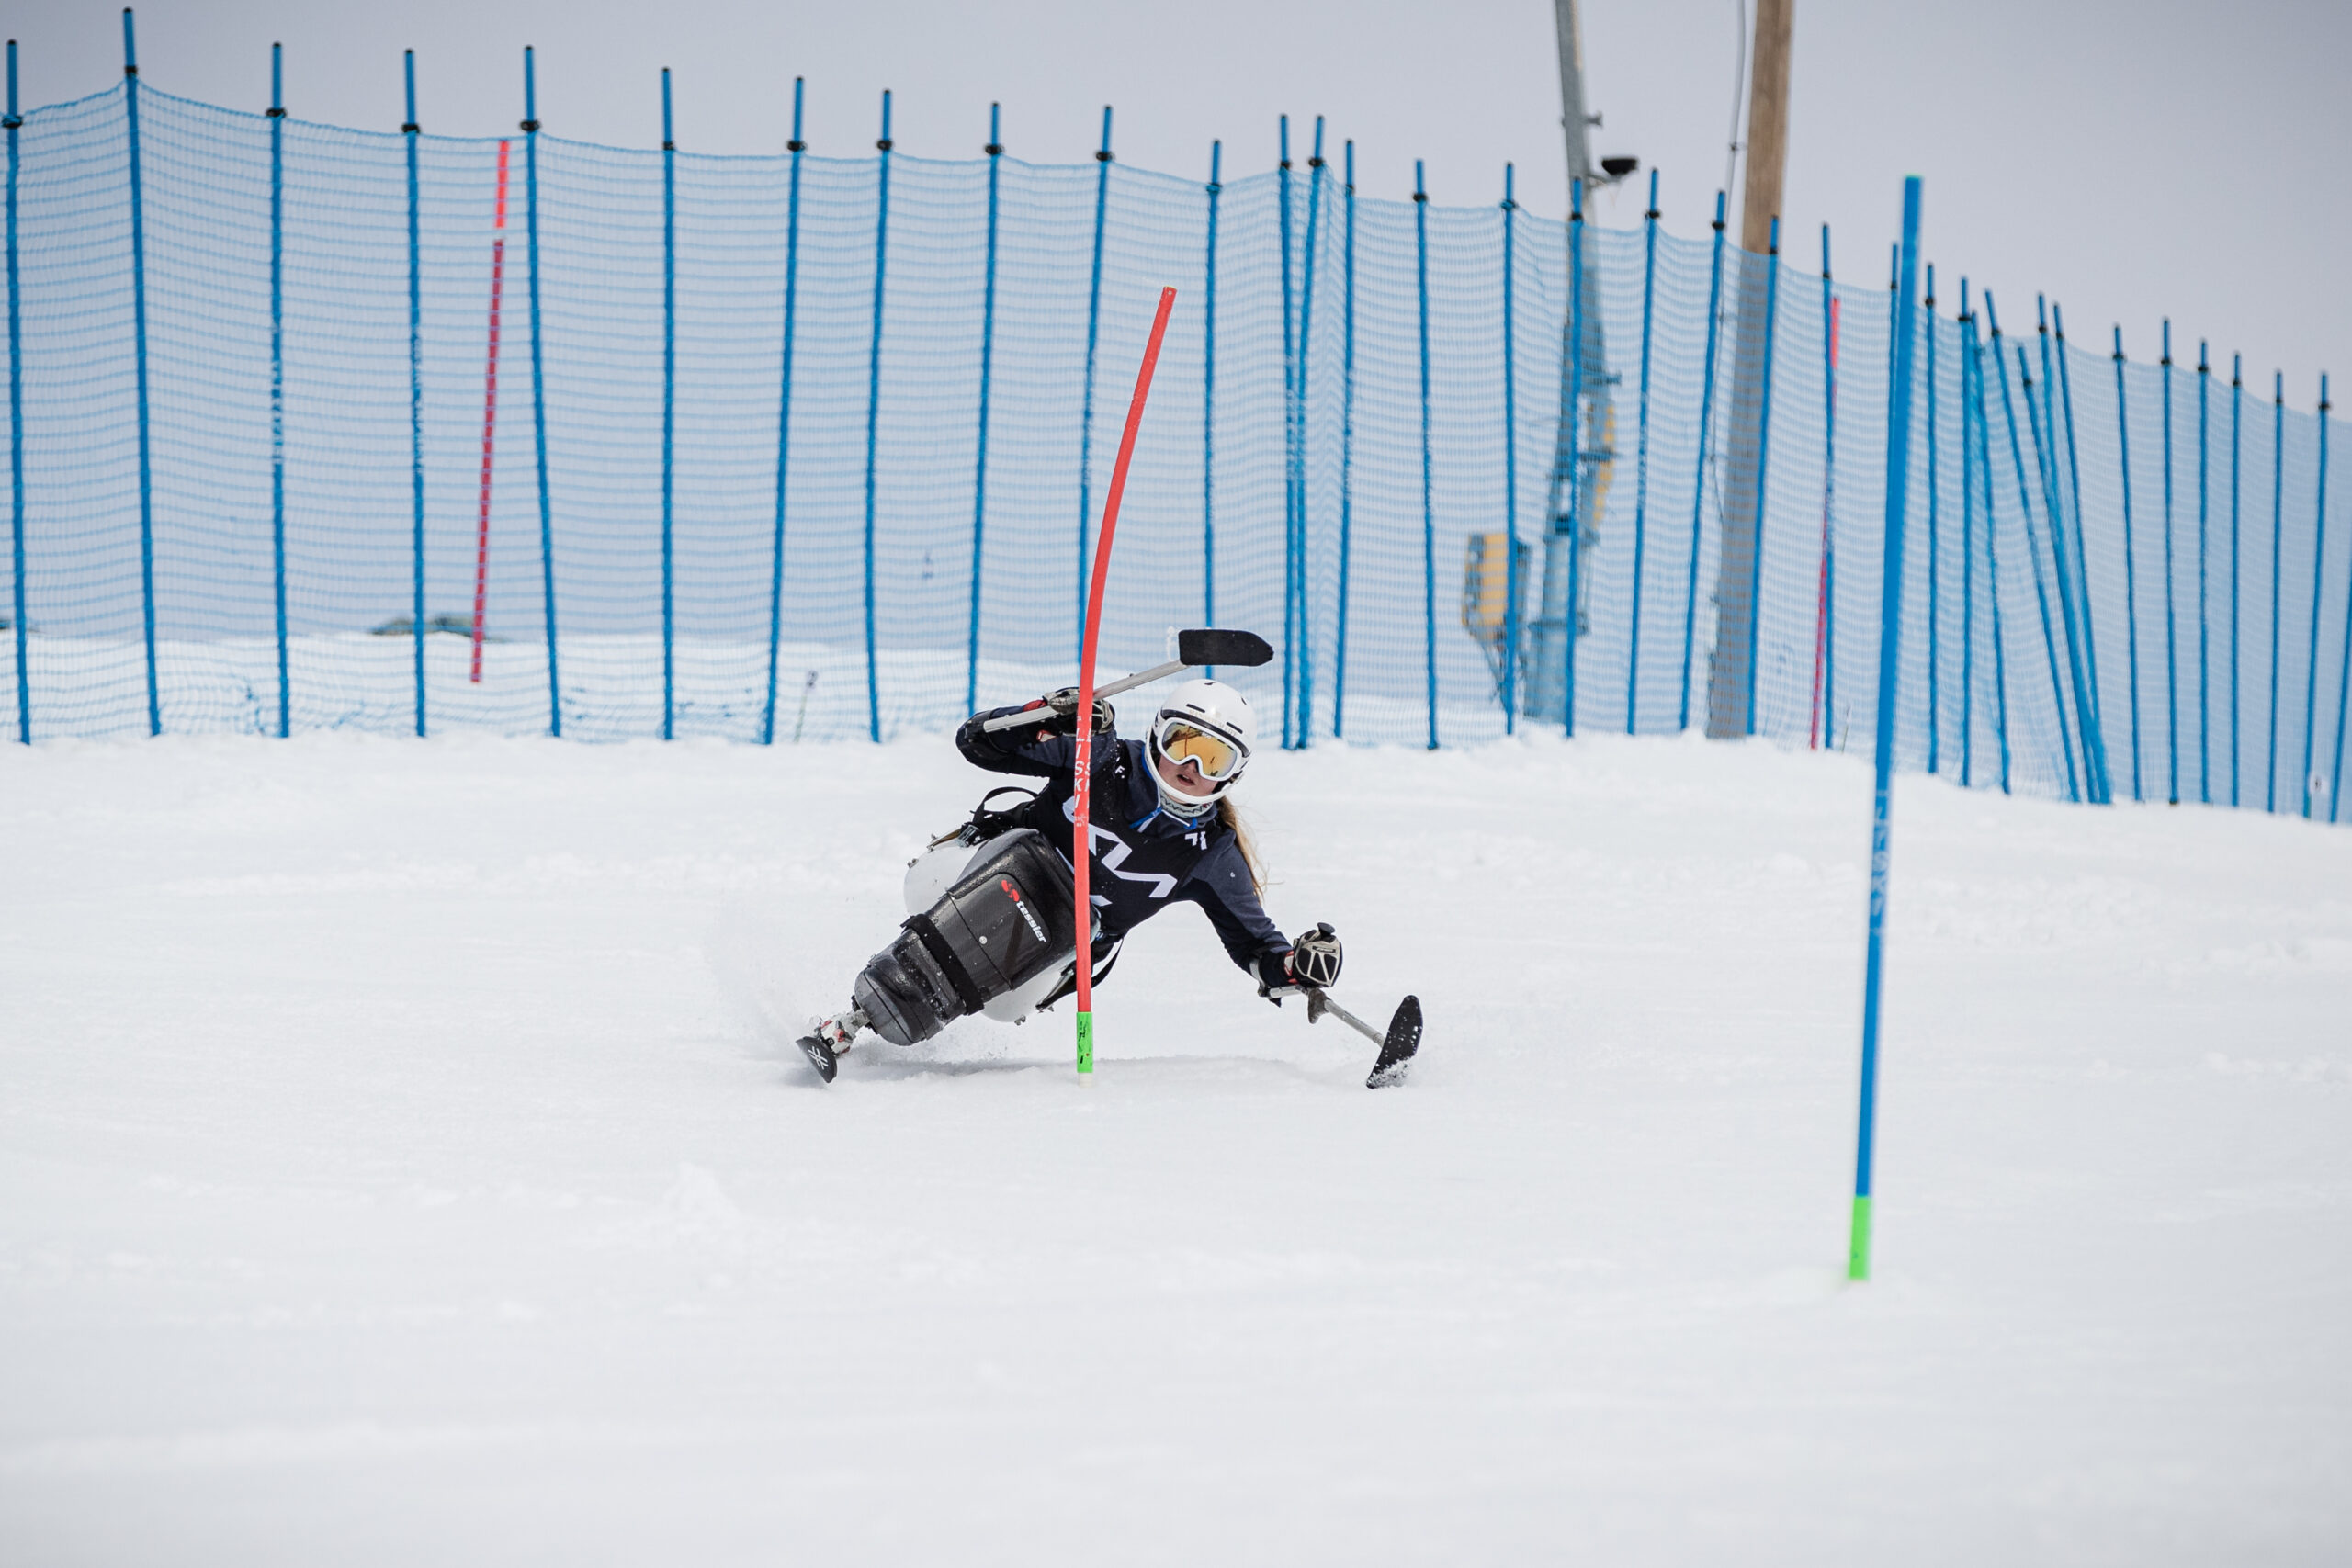 Nette Kiviranta skidar slalom nerför en backe.